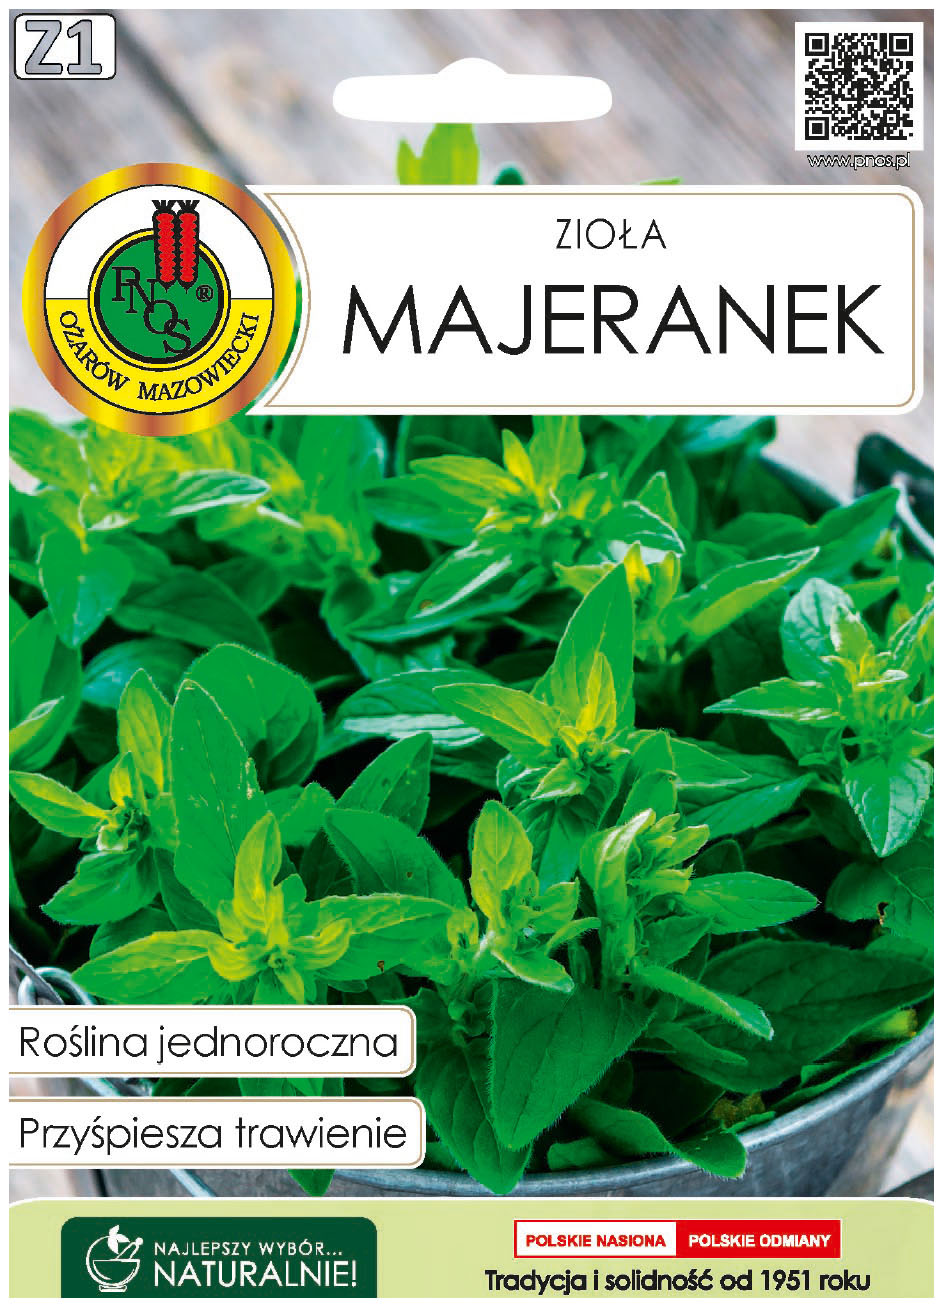 Majeranek Origanum majorana to roślina jednoroczna. Zawiera olejki eteryczne, garbniki, sole mineralne, kwas askorbinowy (witaminę C), karoten.